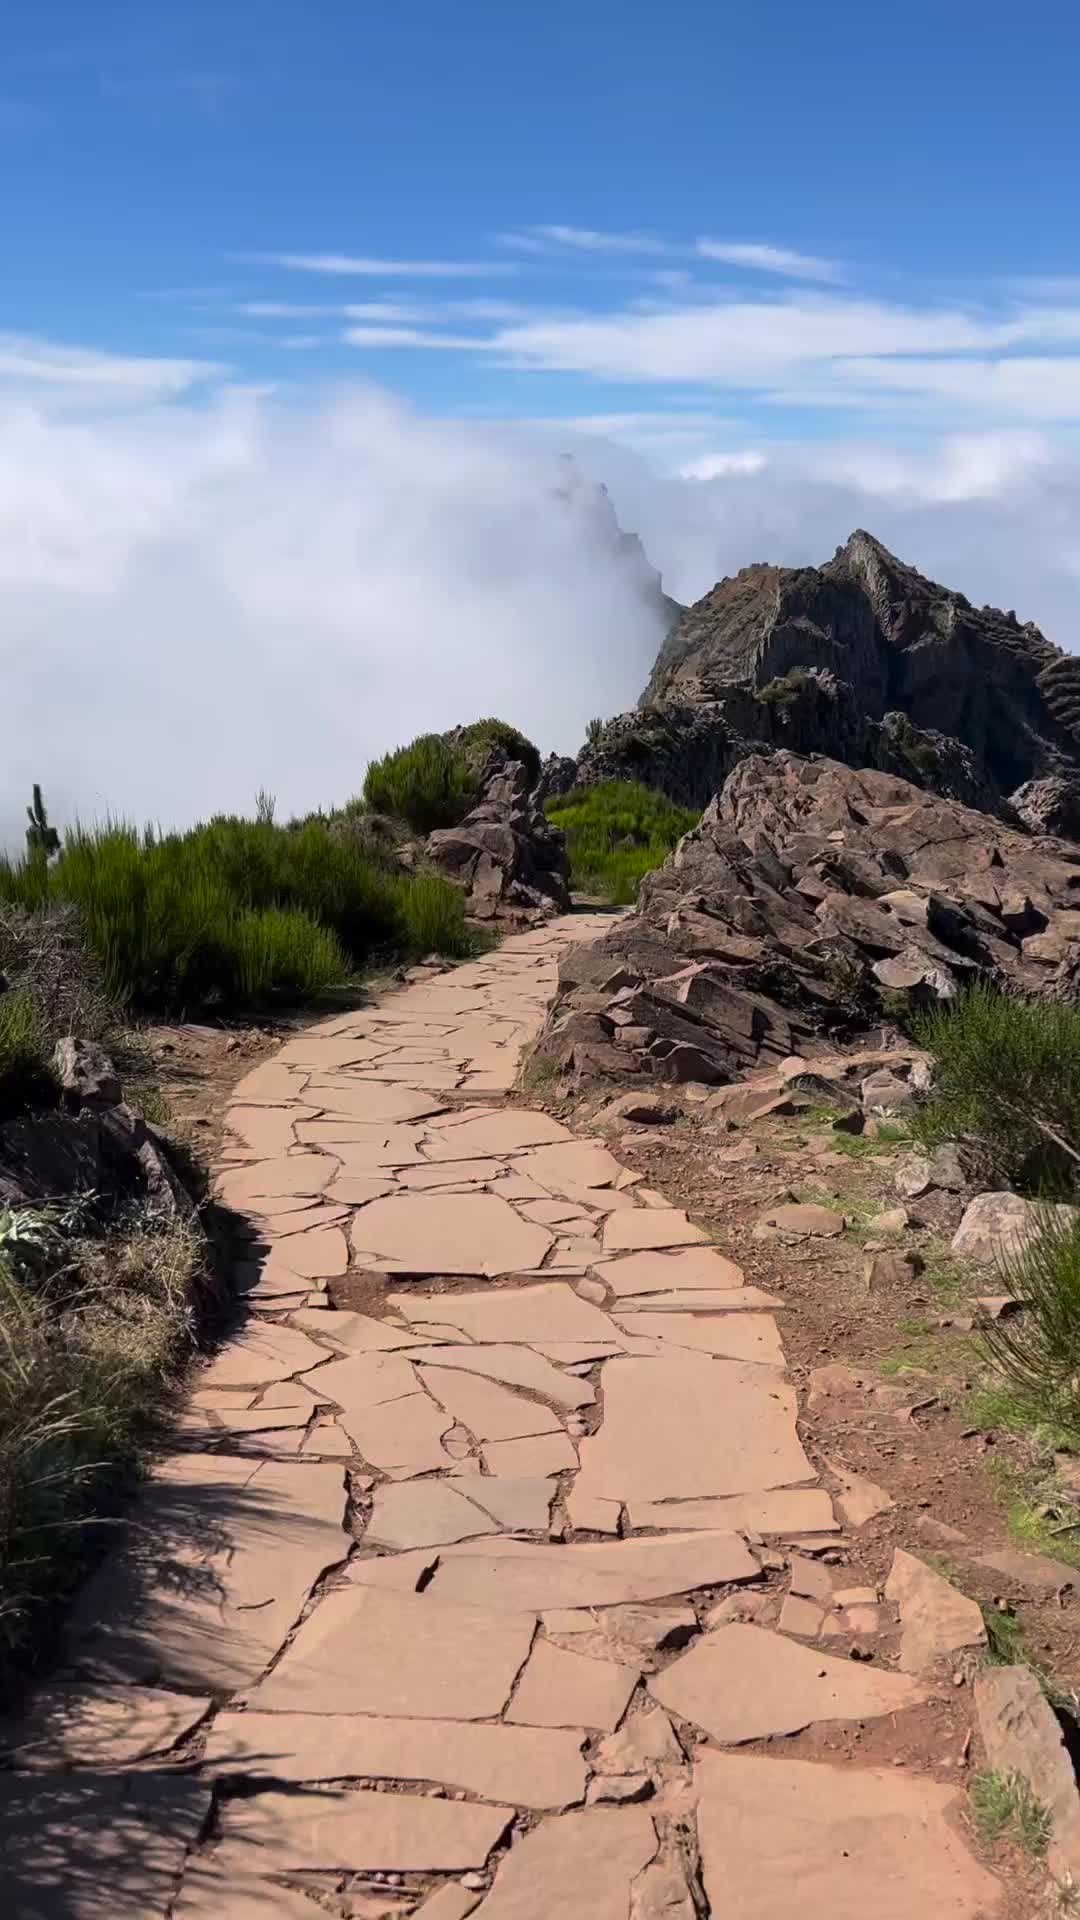 Pico do Arieiro: A Mesmerizing Cloud-Covered Hike